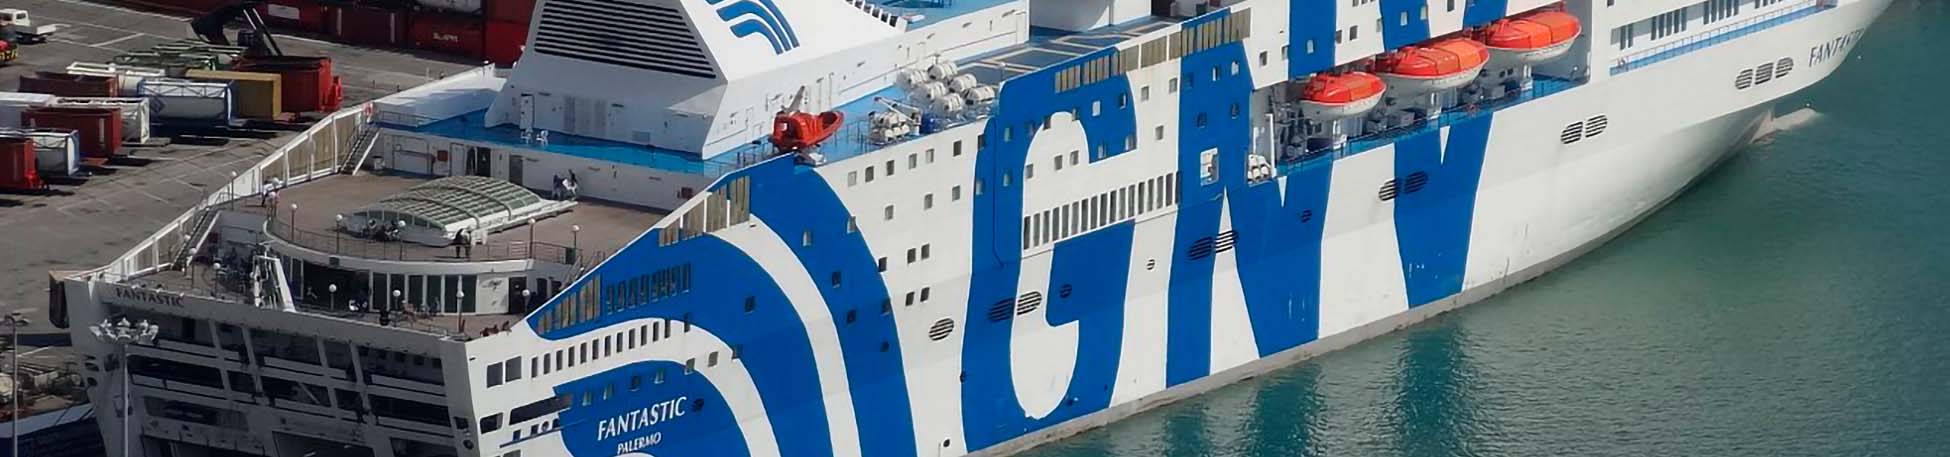 Imagen recurso del puerto de destino Tánger Med para la ruta en ferry Génova - Tánger Med